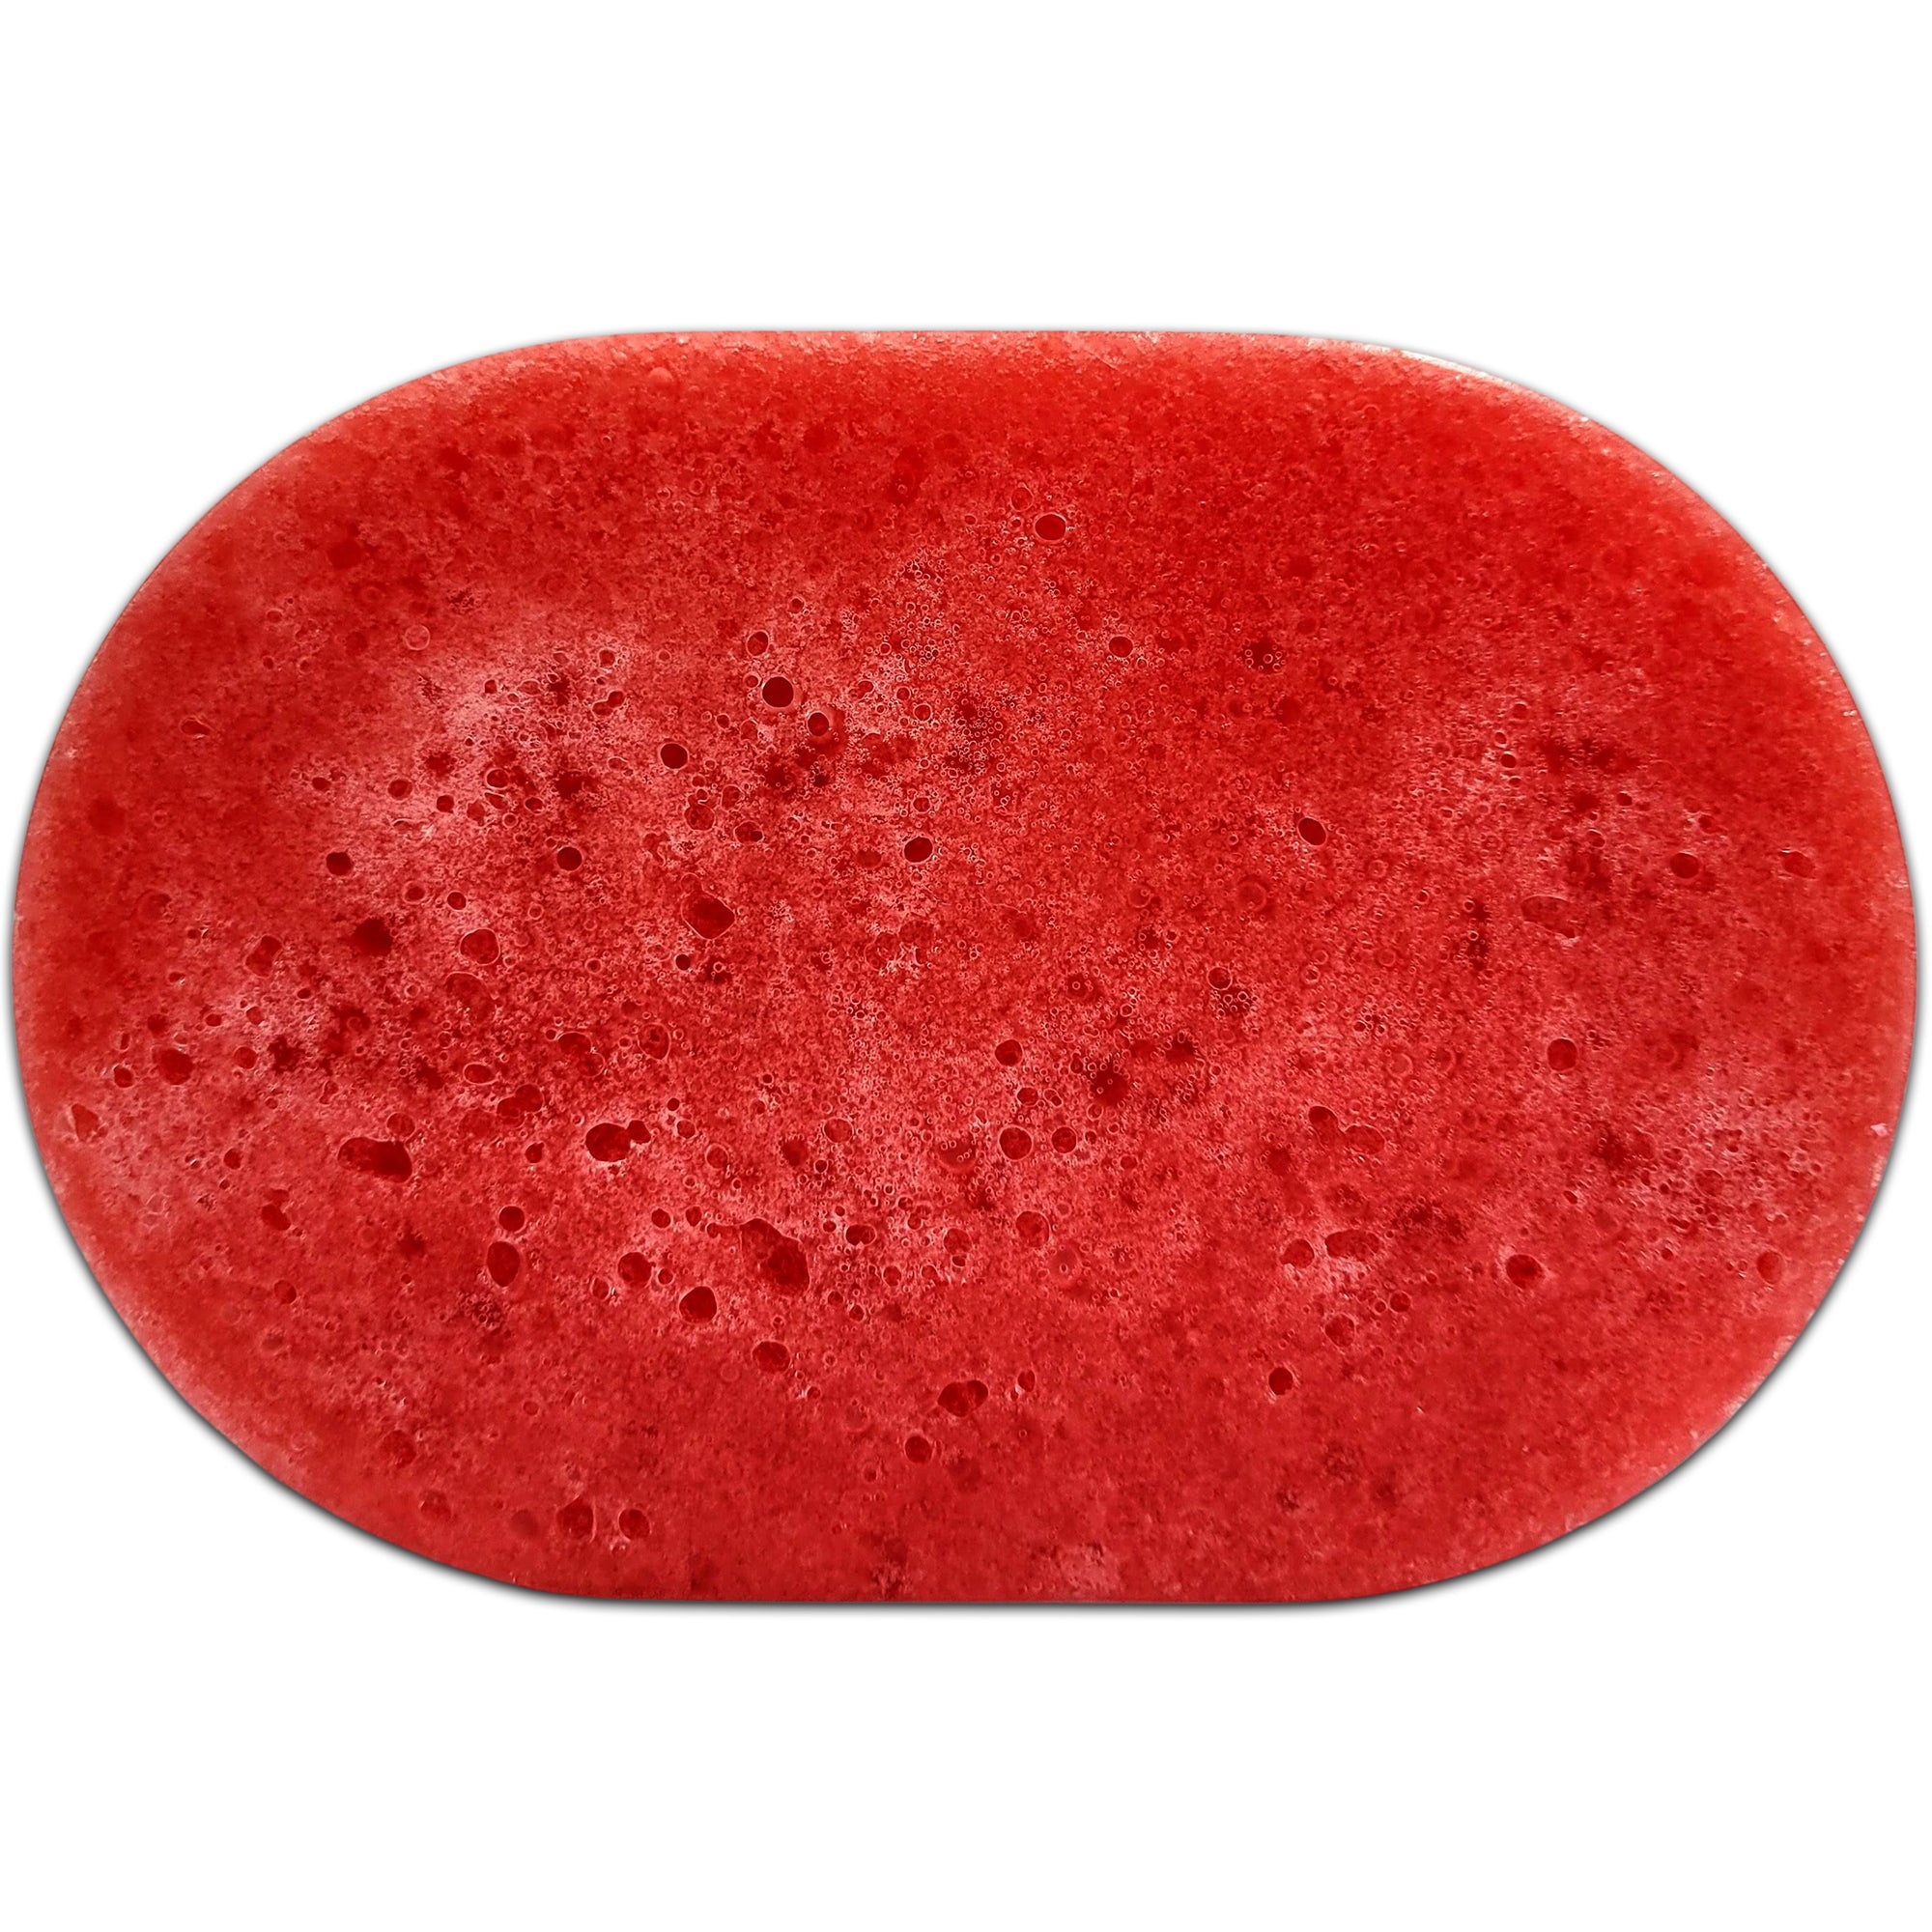 Black Cherry Soap Sponges